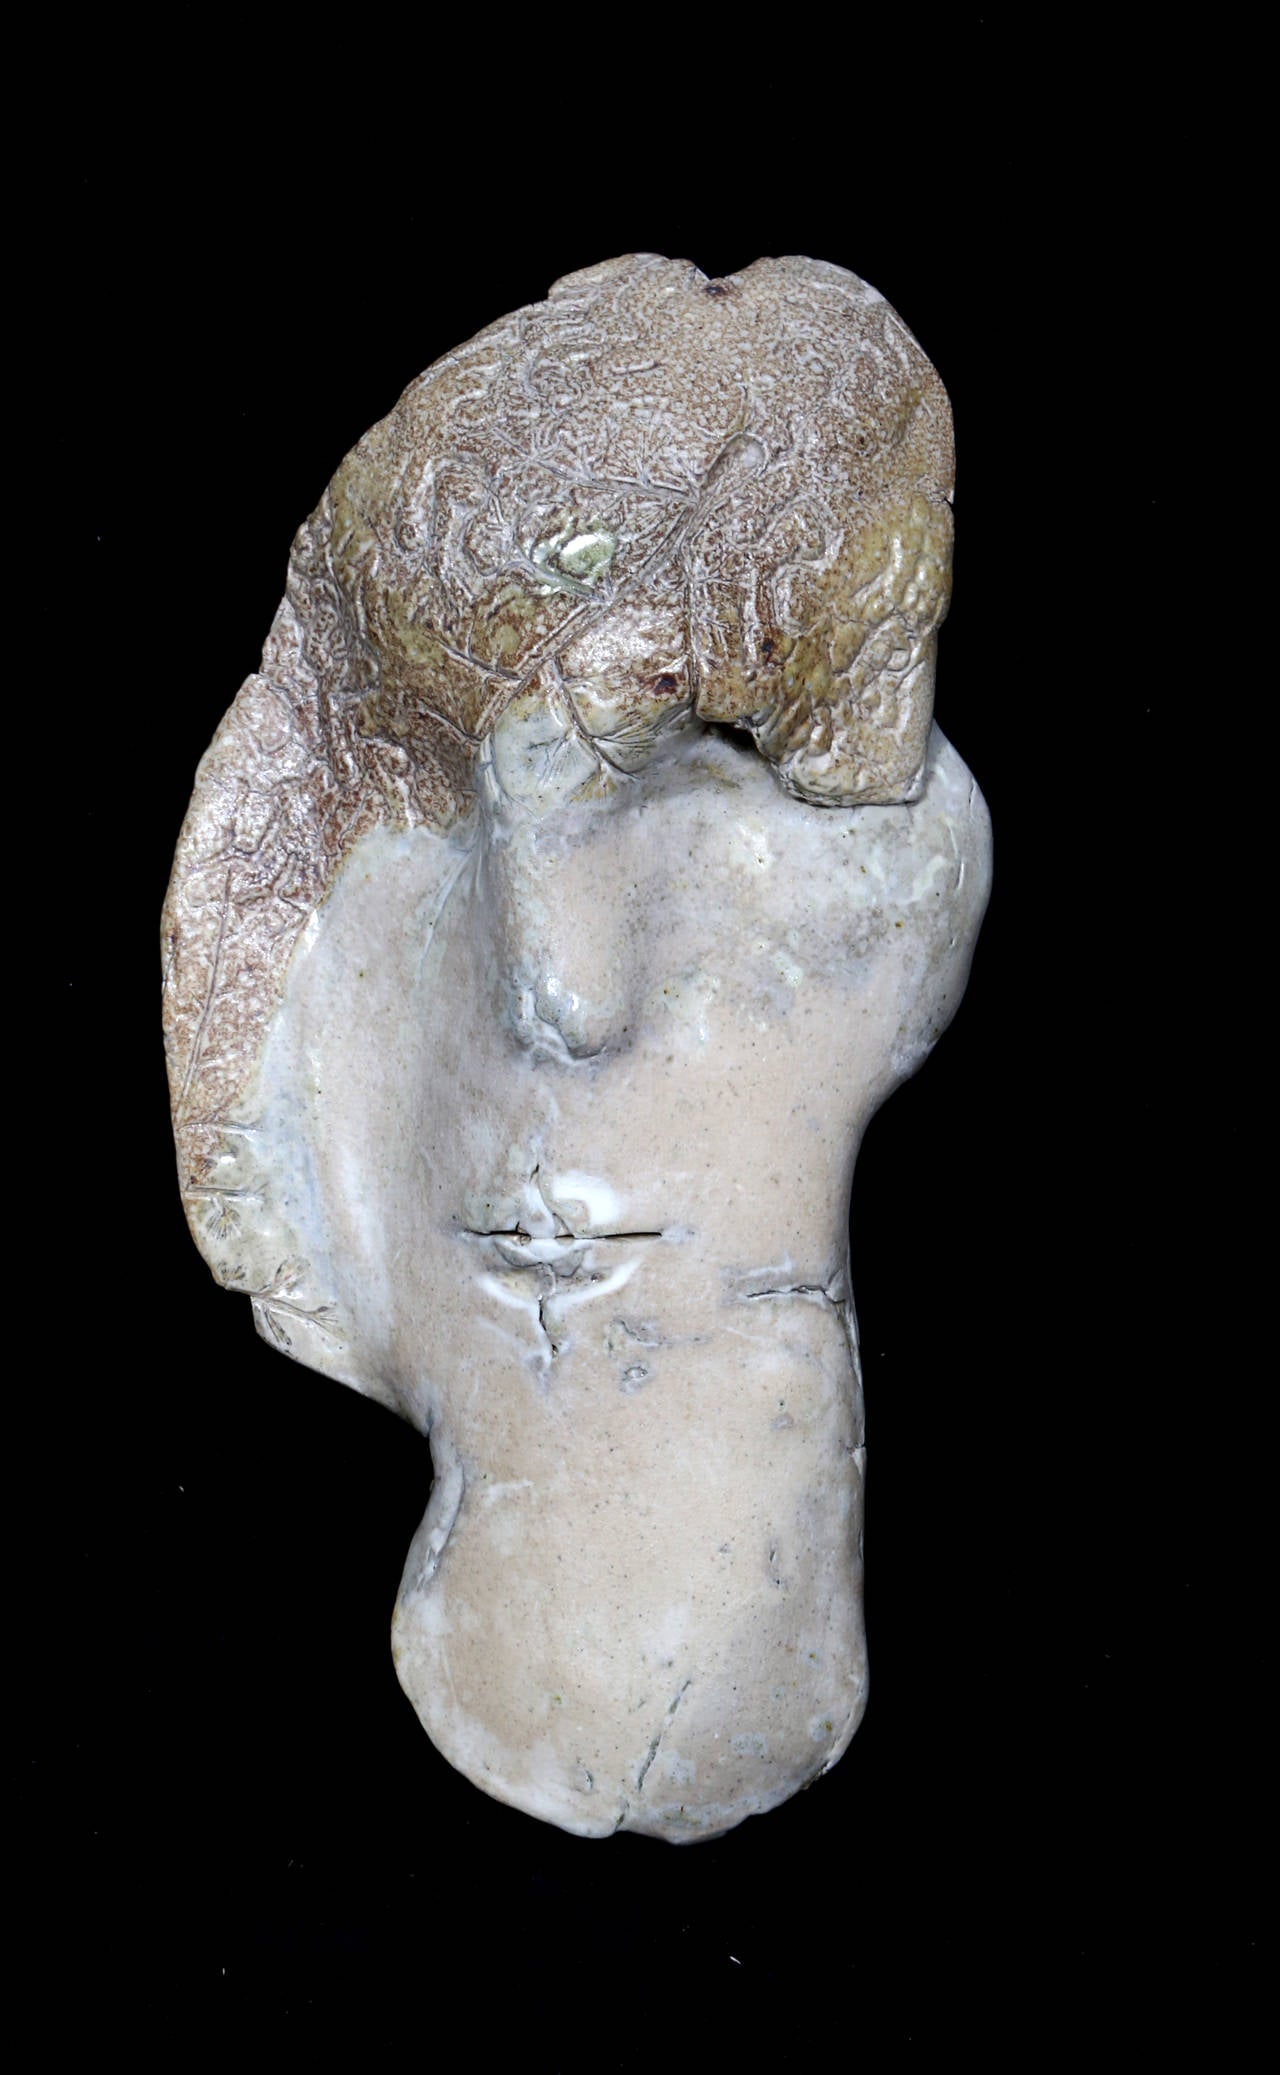 Eine einzigartige Tonmaske des auf Hawaii lebenden Künstlers Ira Ono. 

Künstler: Ira Ono
Jahr: 1982
Medium: Keramik
Größe: 10,5  x 5.5  x 3 in. (26.67  x 13.97  x 7.62 cm)